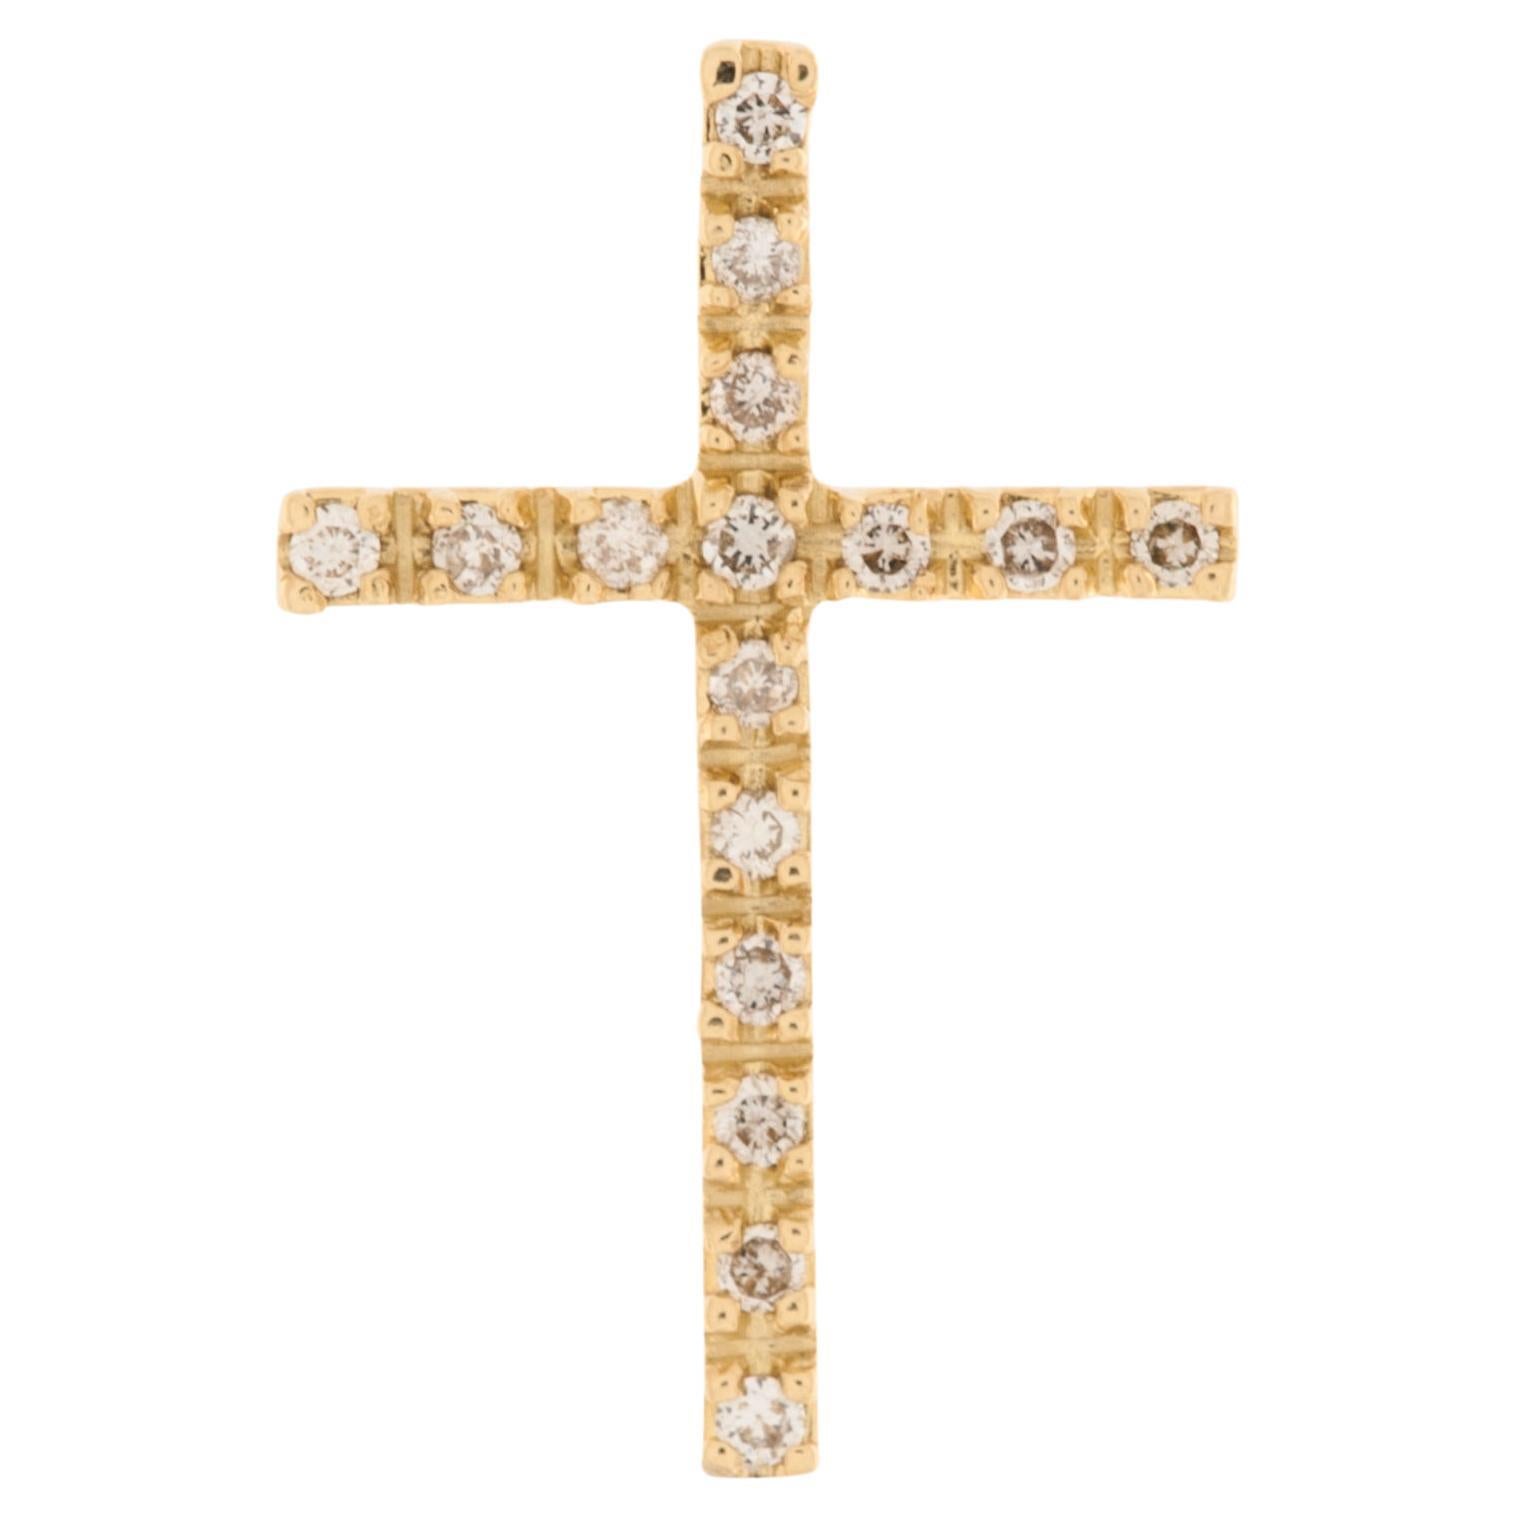 Croix espagnole vintage en or jaune 18 carats avec diamants